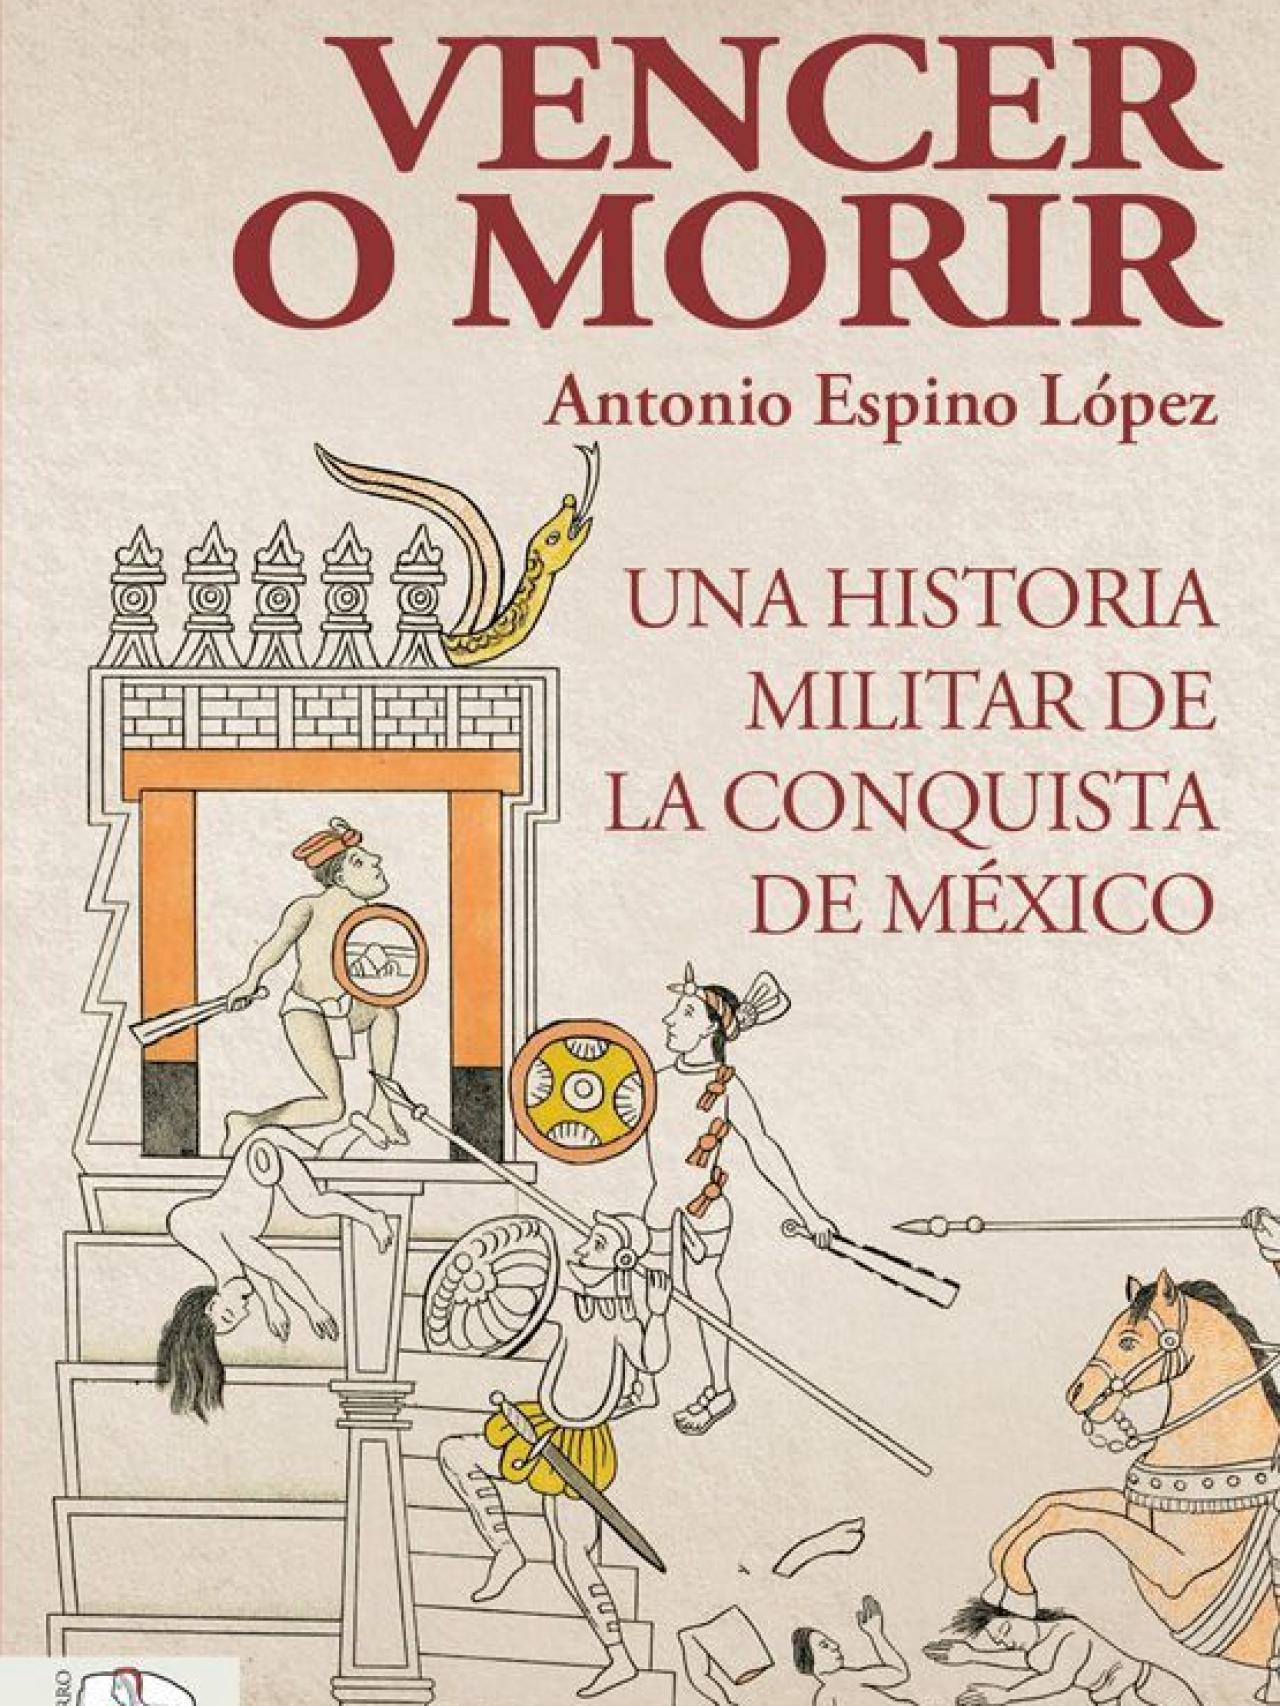 Diez obras de Historia para leer y regalar en el Día del Libro, según El  Español